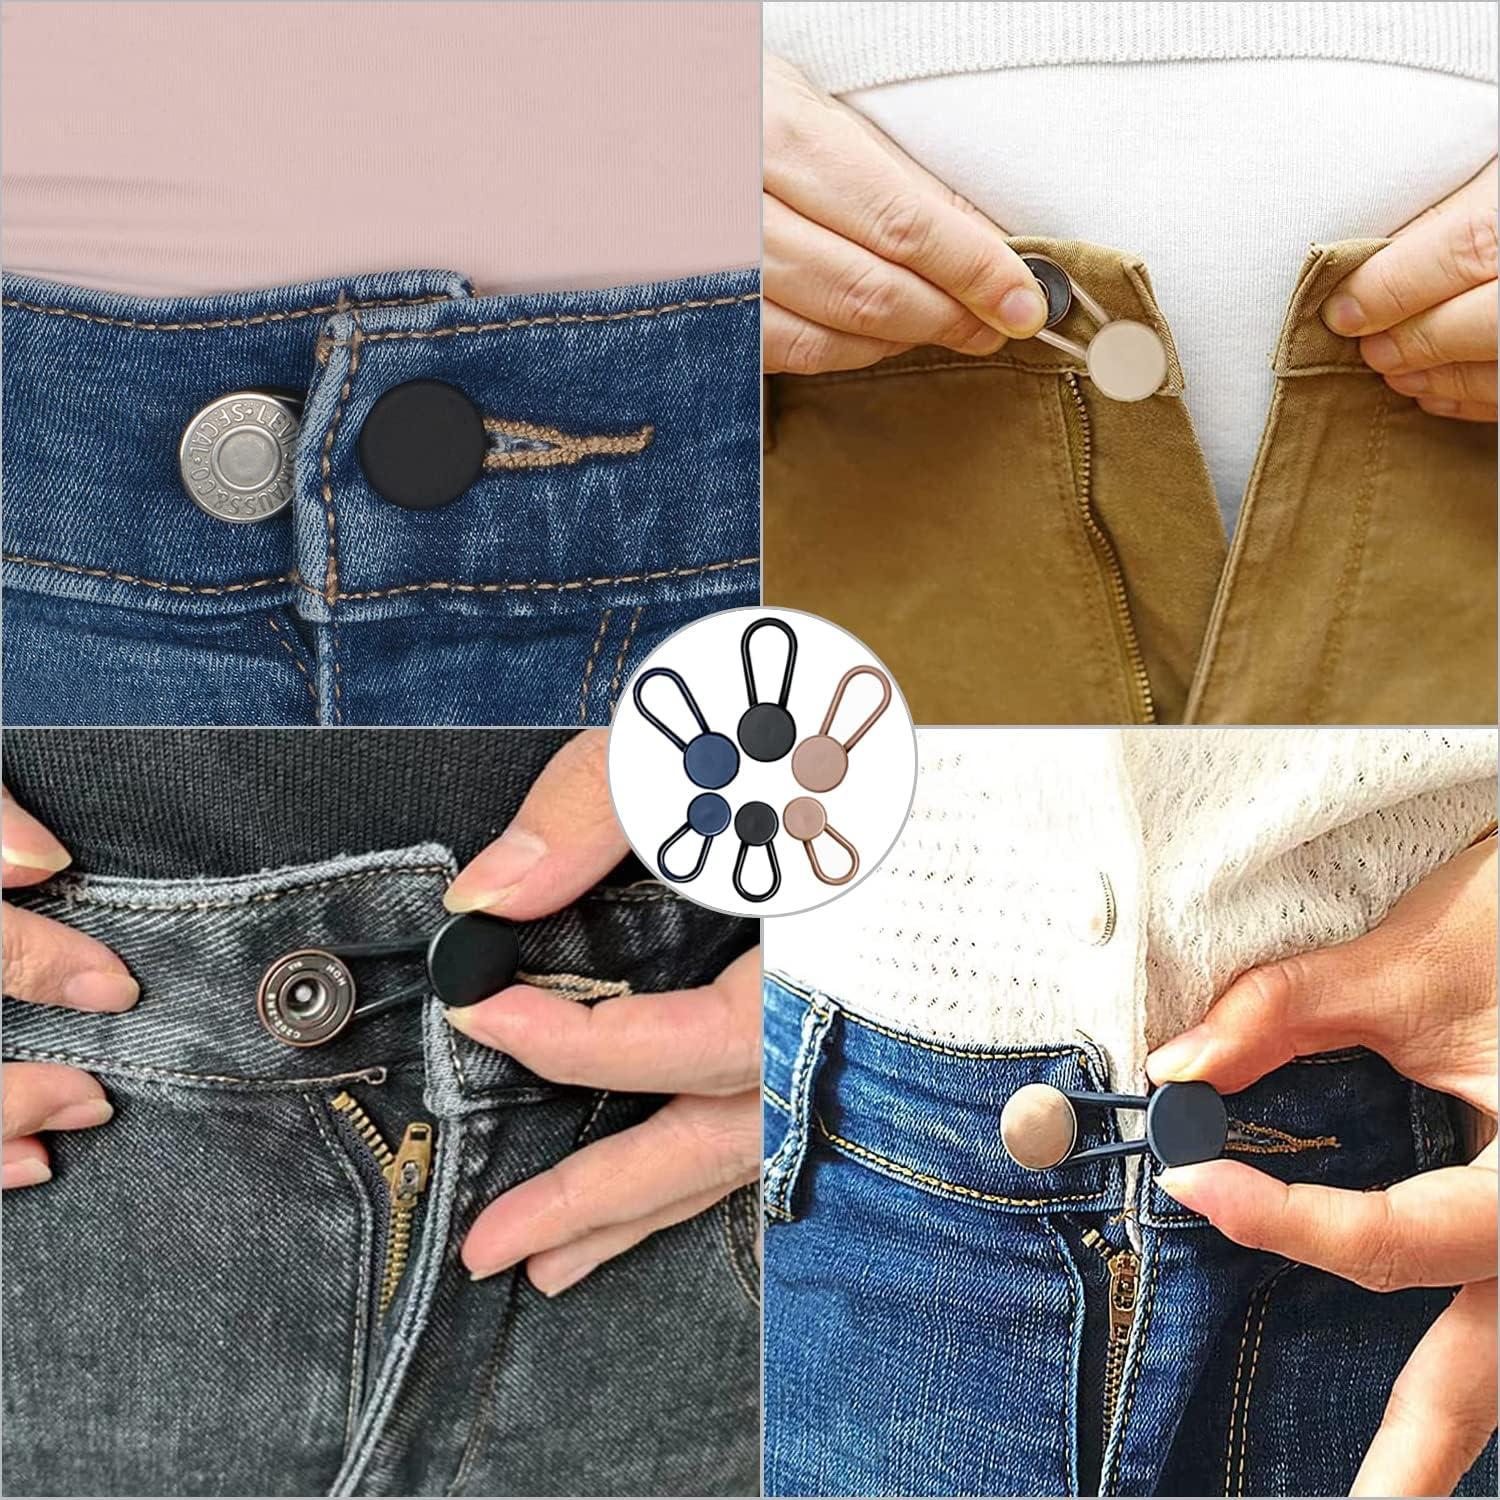 Flexible Button Extender for Pants Waist Extenders for Pants for Men and  Women (10-Piece Multiple Colors) Blue Denim Jeans Button Extender, Black 